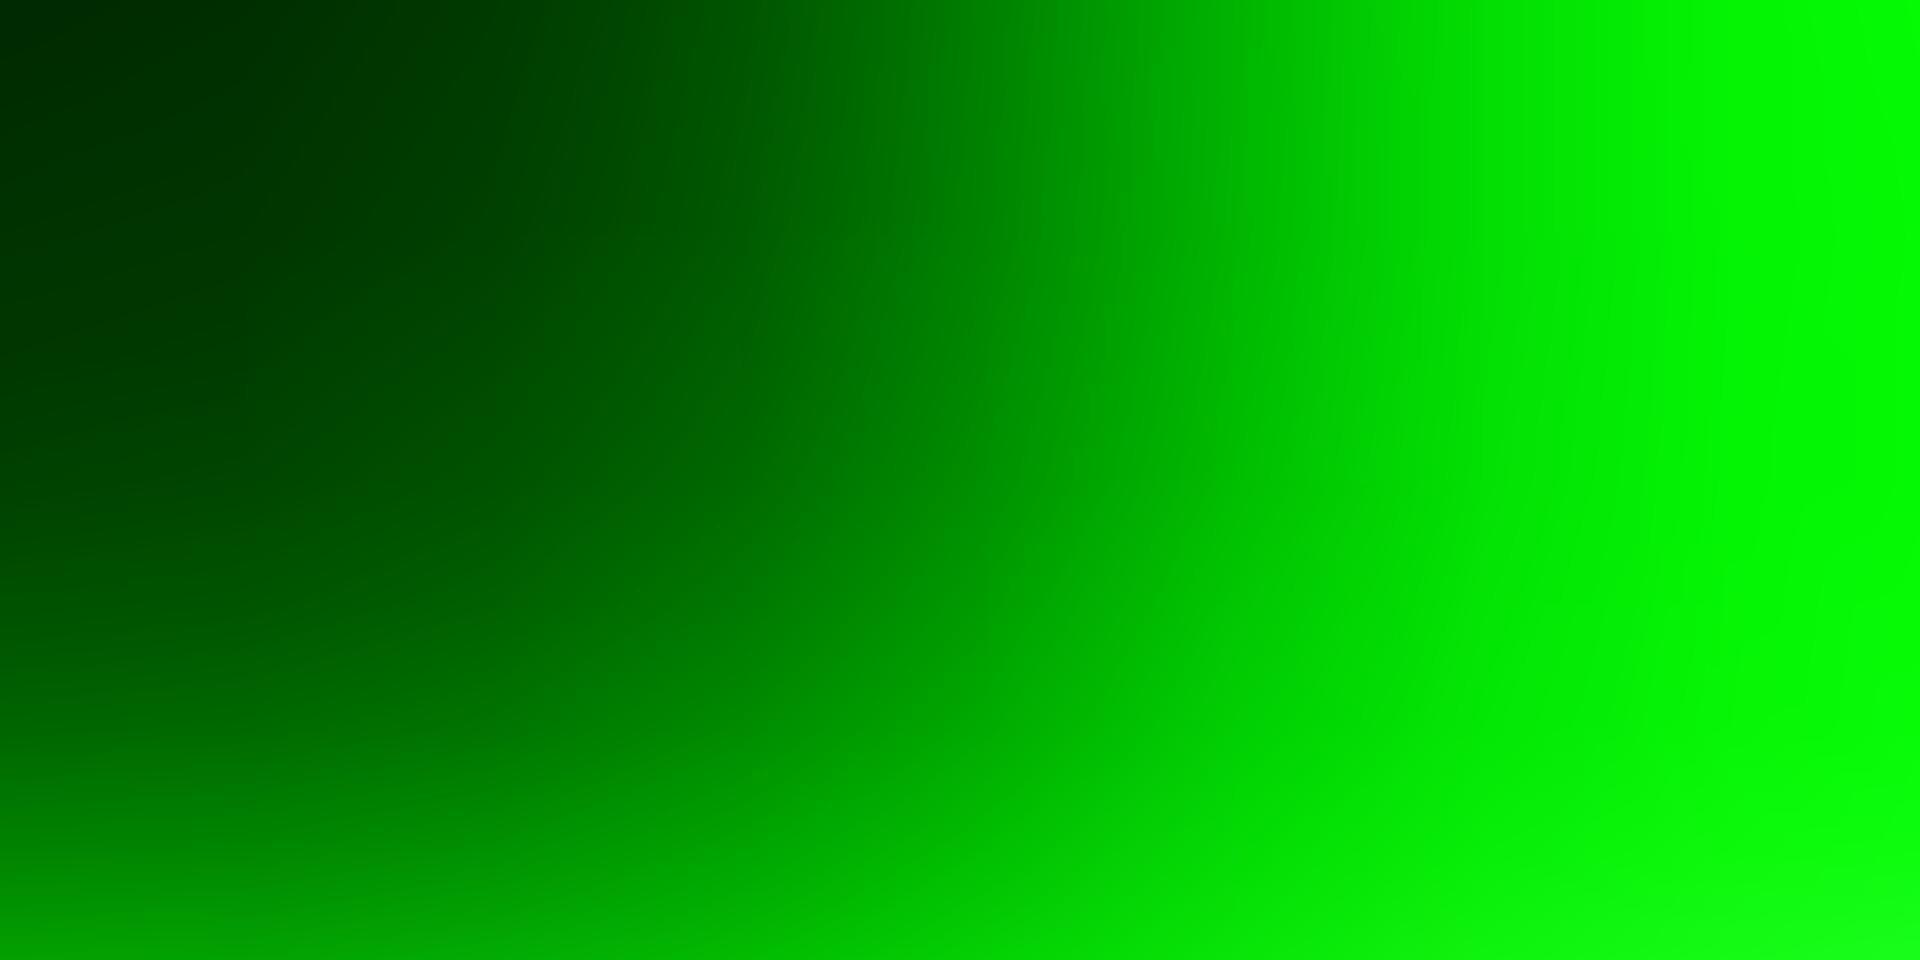 textura brillante abstracta del vector verde claro.